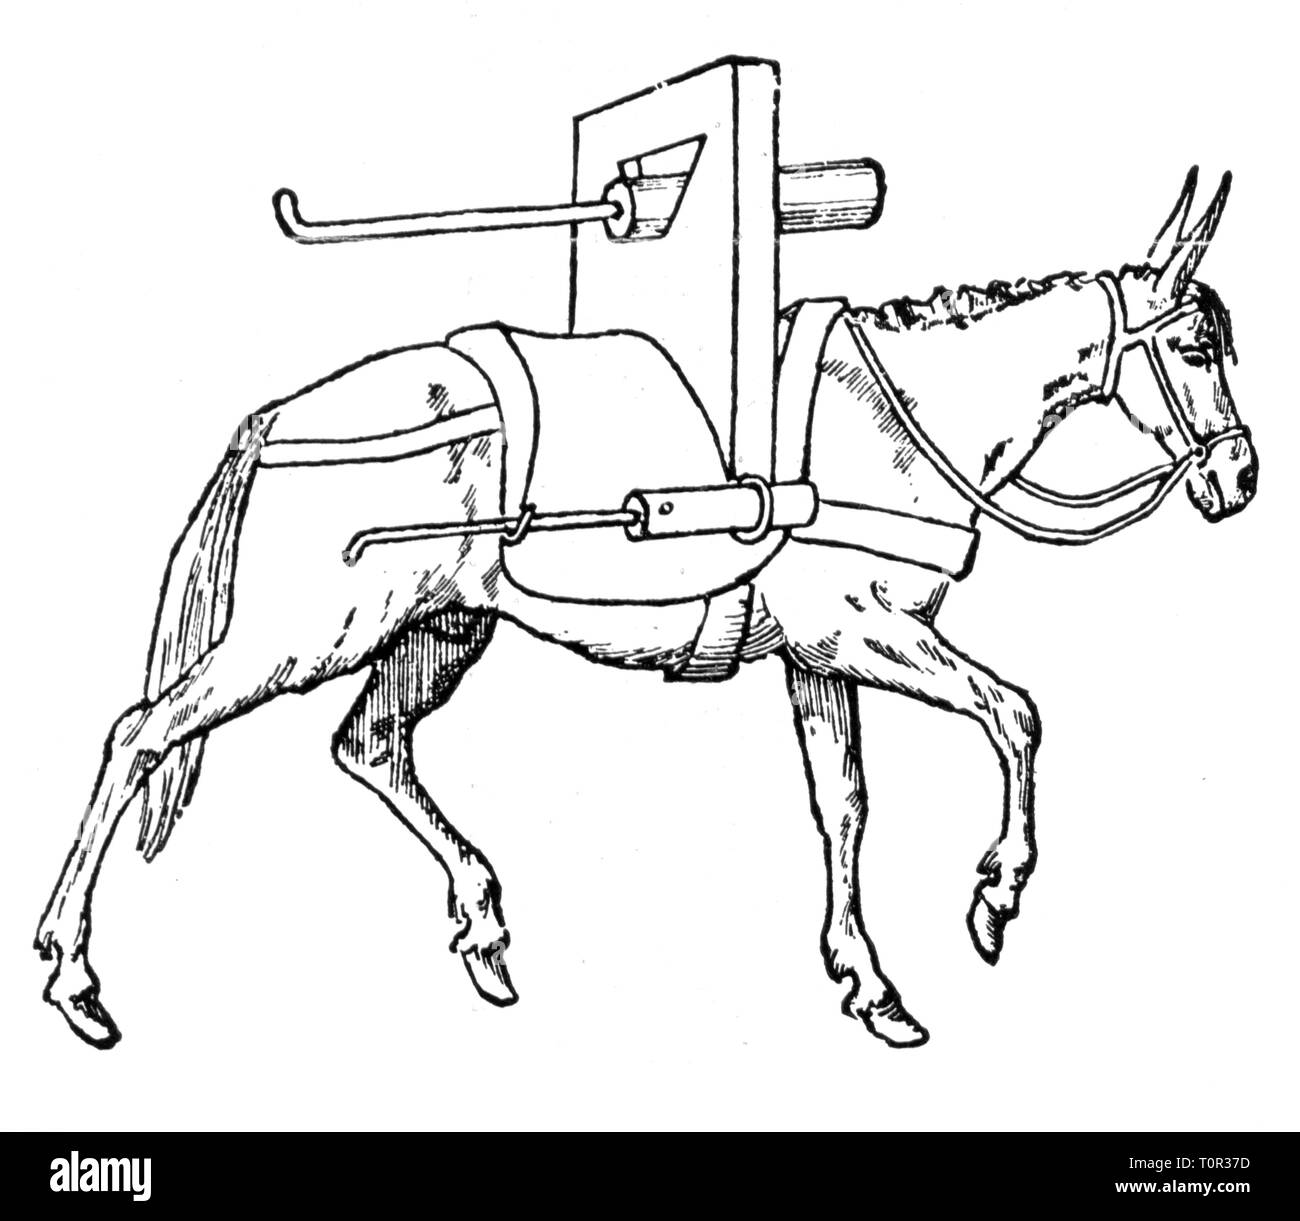 L'artillerie, militaires, armes à feu, armes à feu de l'artillerie de montagne, monté sur un mulet, après le manuscrit, 1450, Additional-Rights Clearance-Info-Not-Available- Banque D'Images